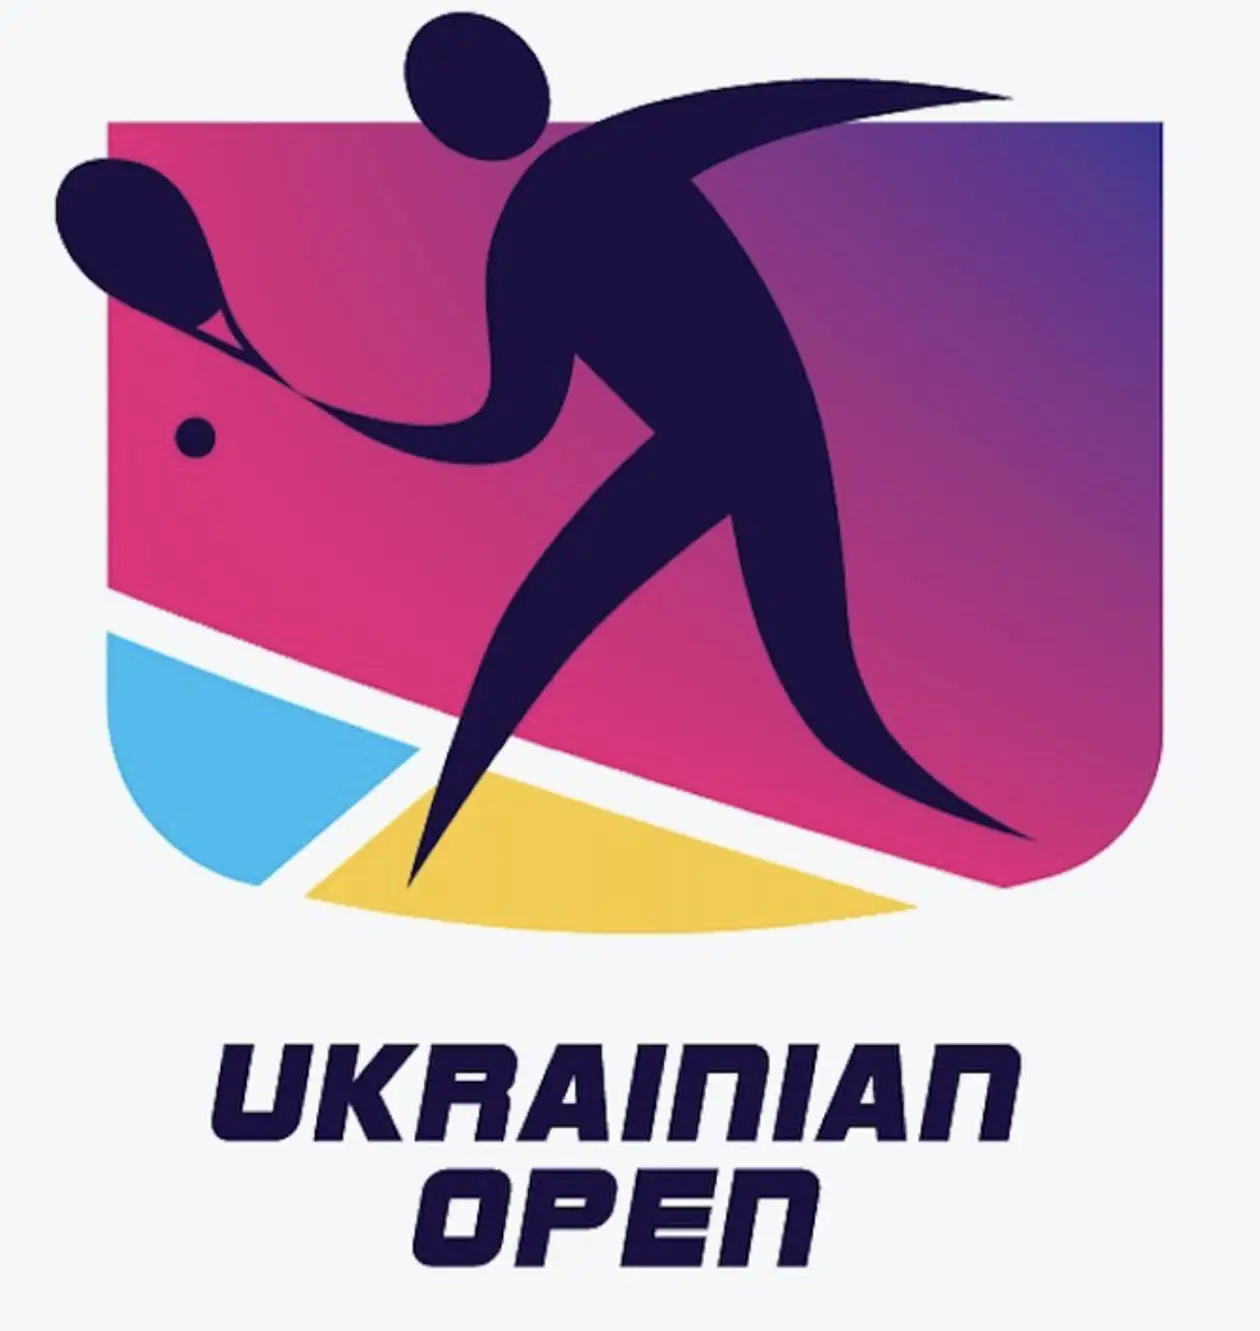 Сквош-турнір всеукраїнського масштабу: як пройшов Ukrainian Open 2021